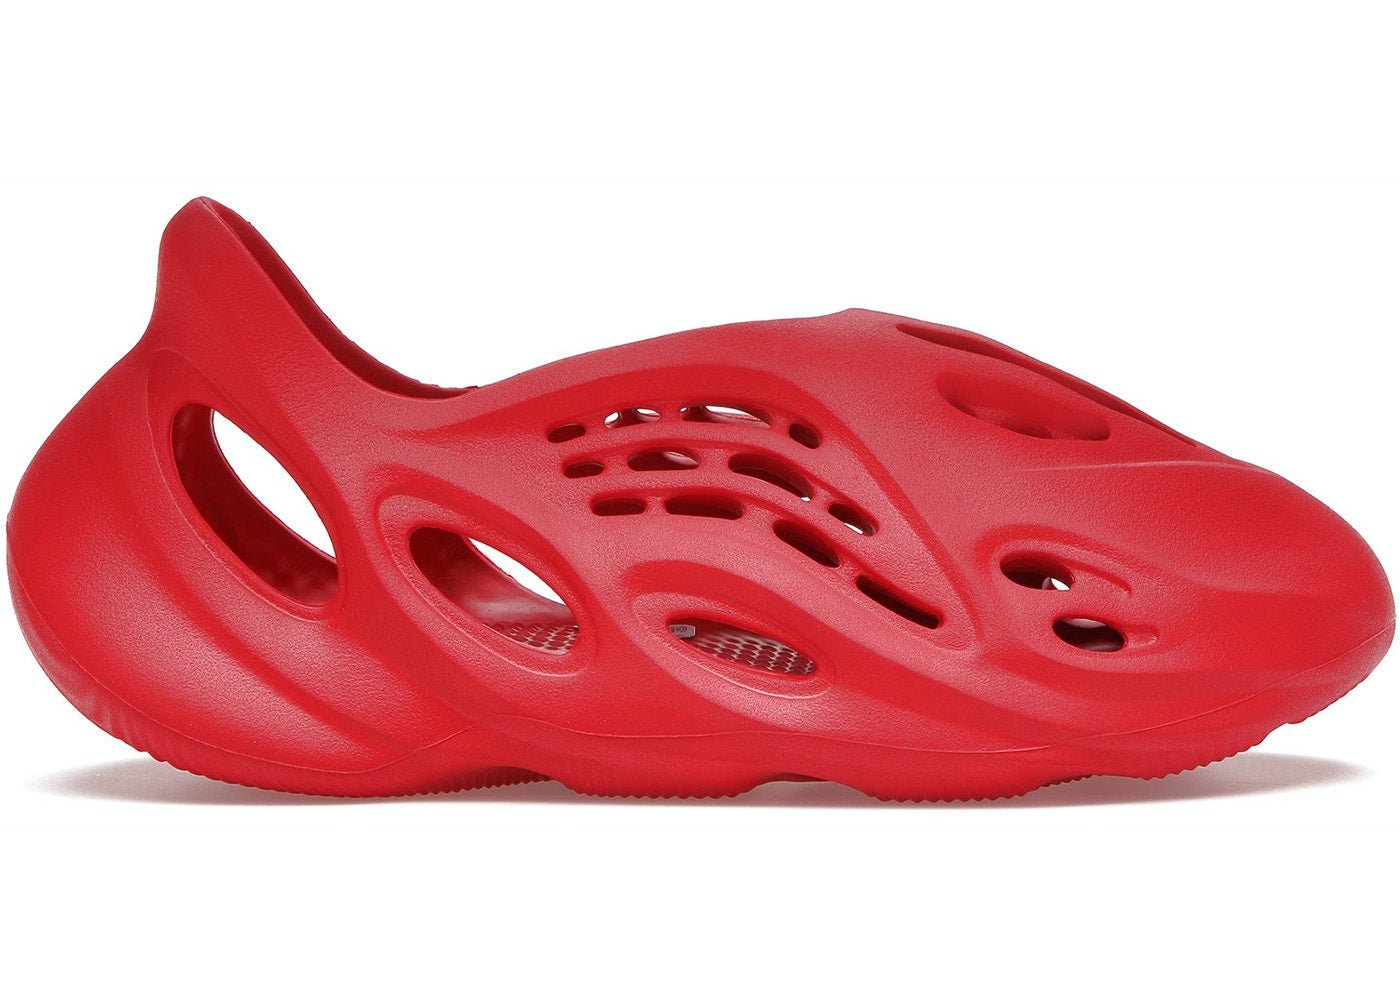 Yeezy Foam Runner (RNNR) Vermillion Red - Supra Sneakers